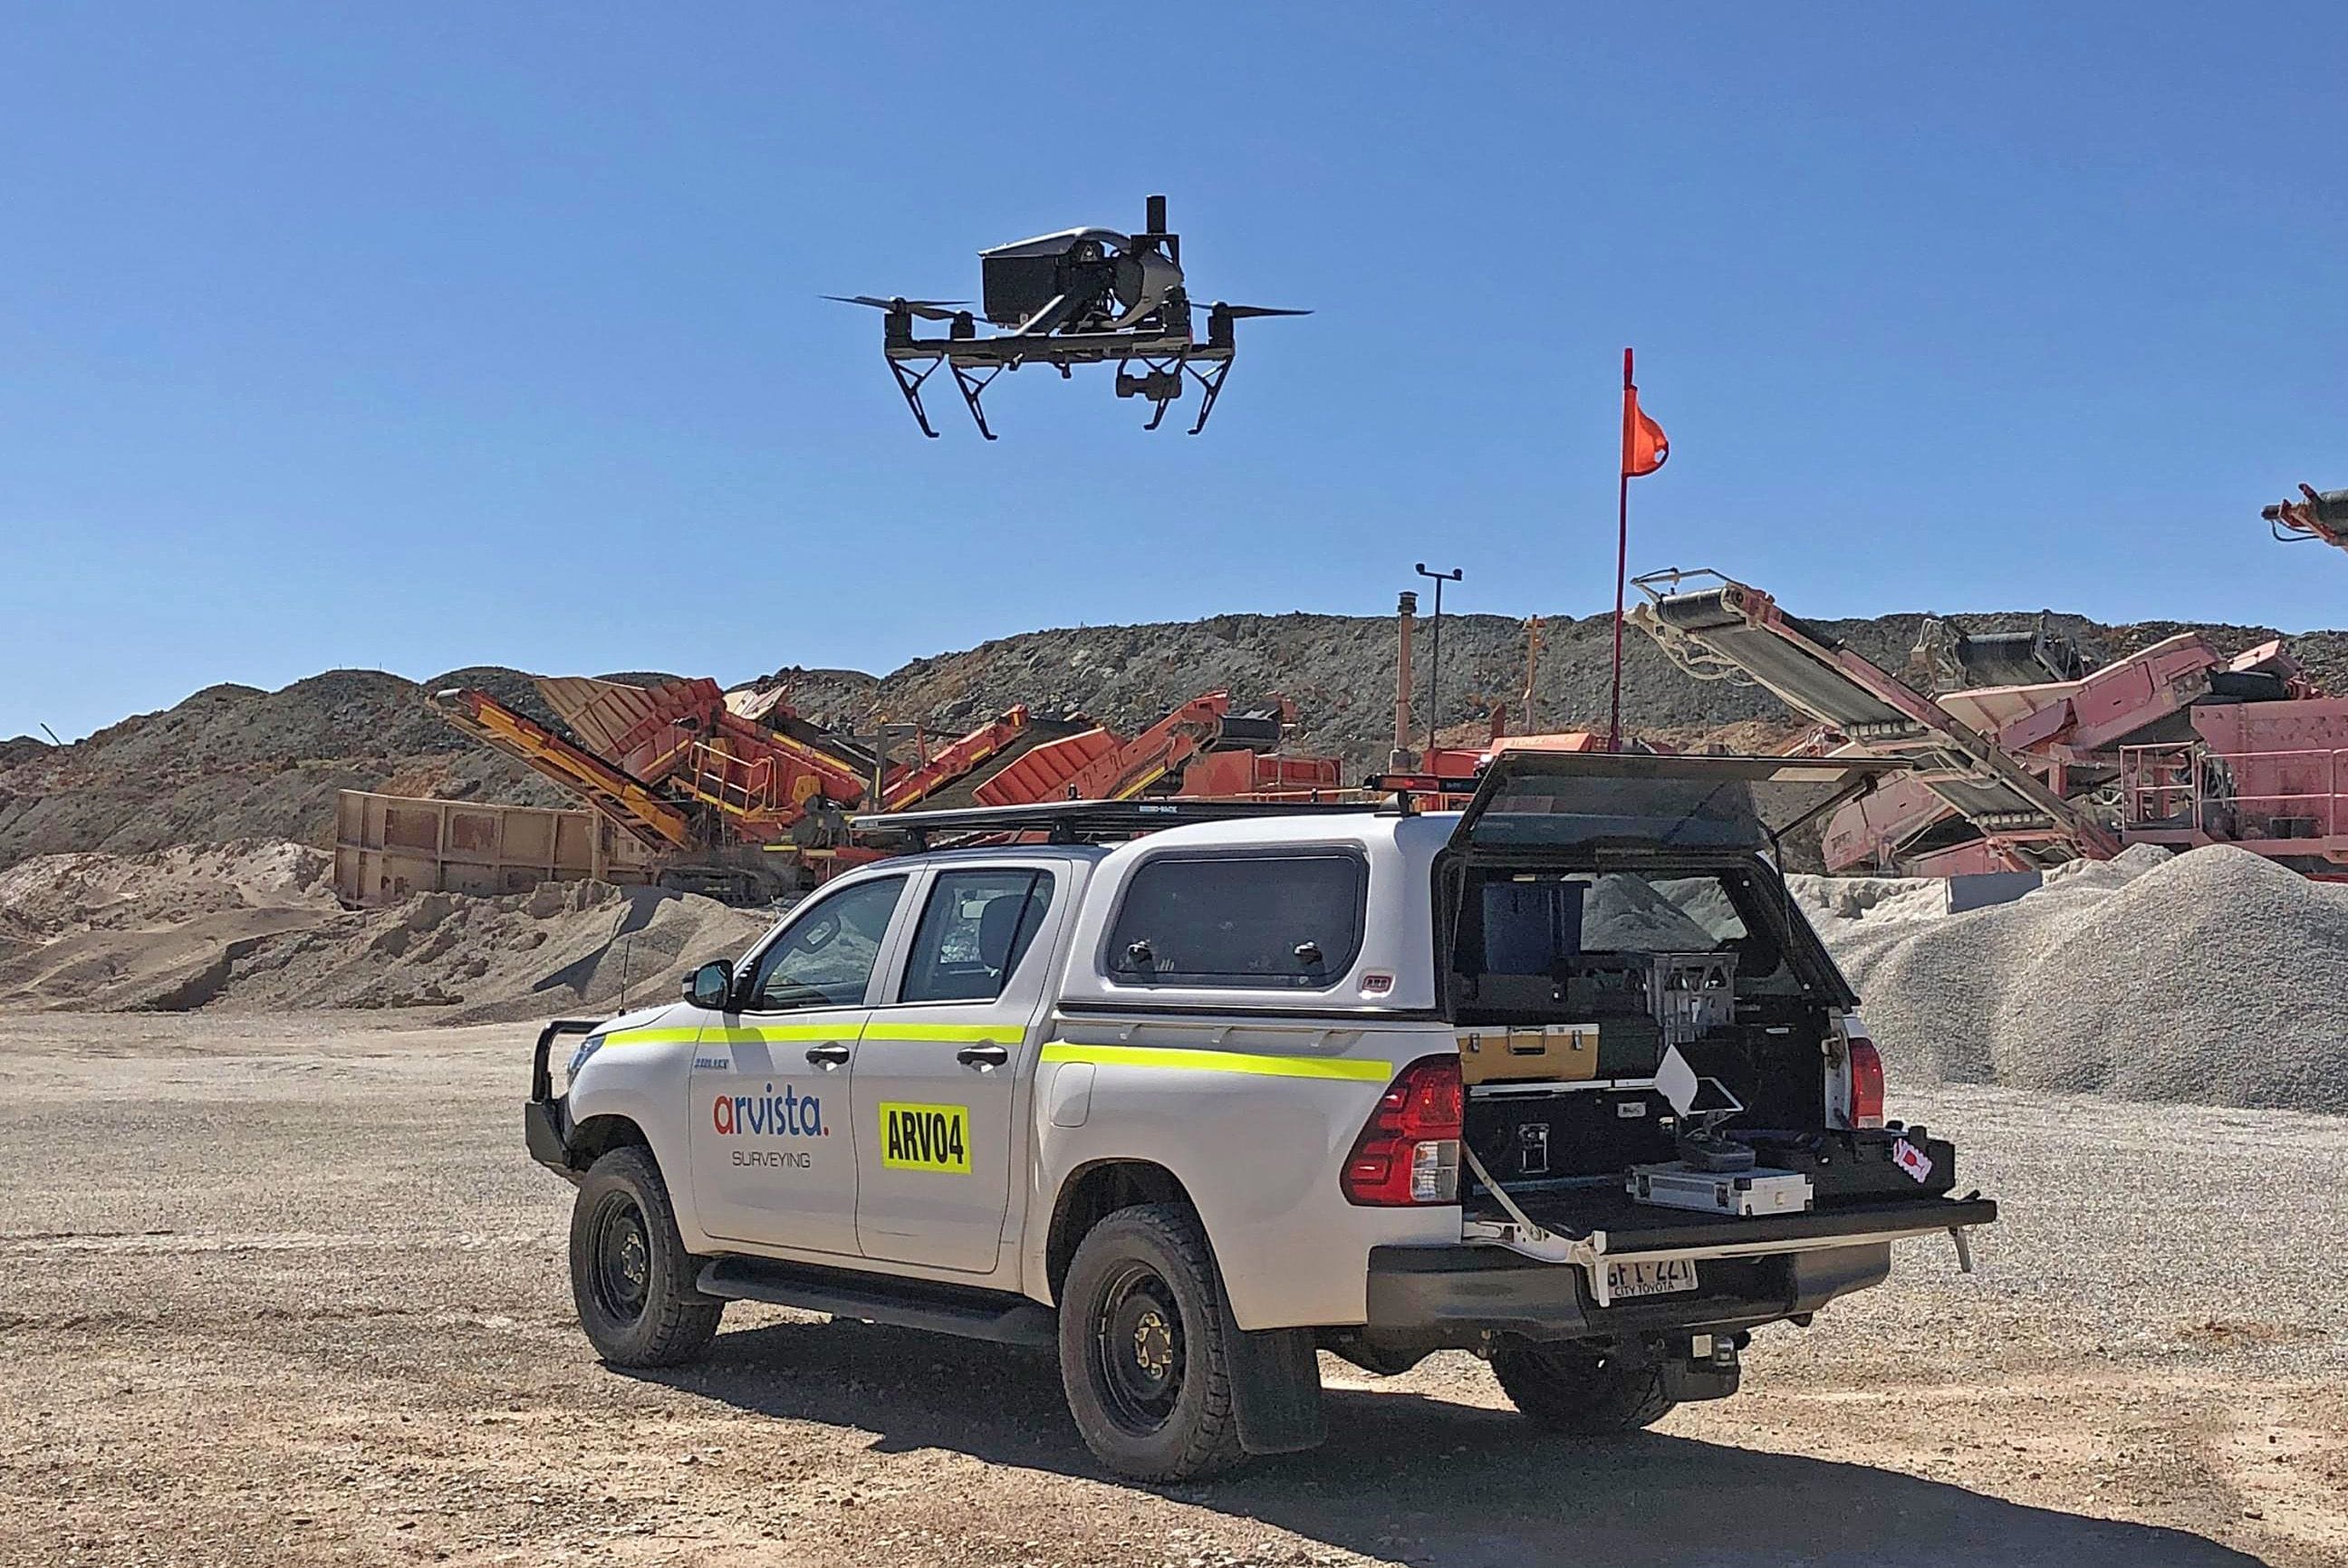 UAV Aerial Surveying Equipment